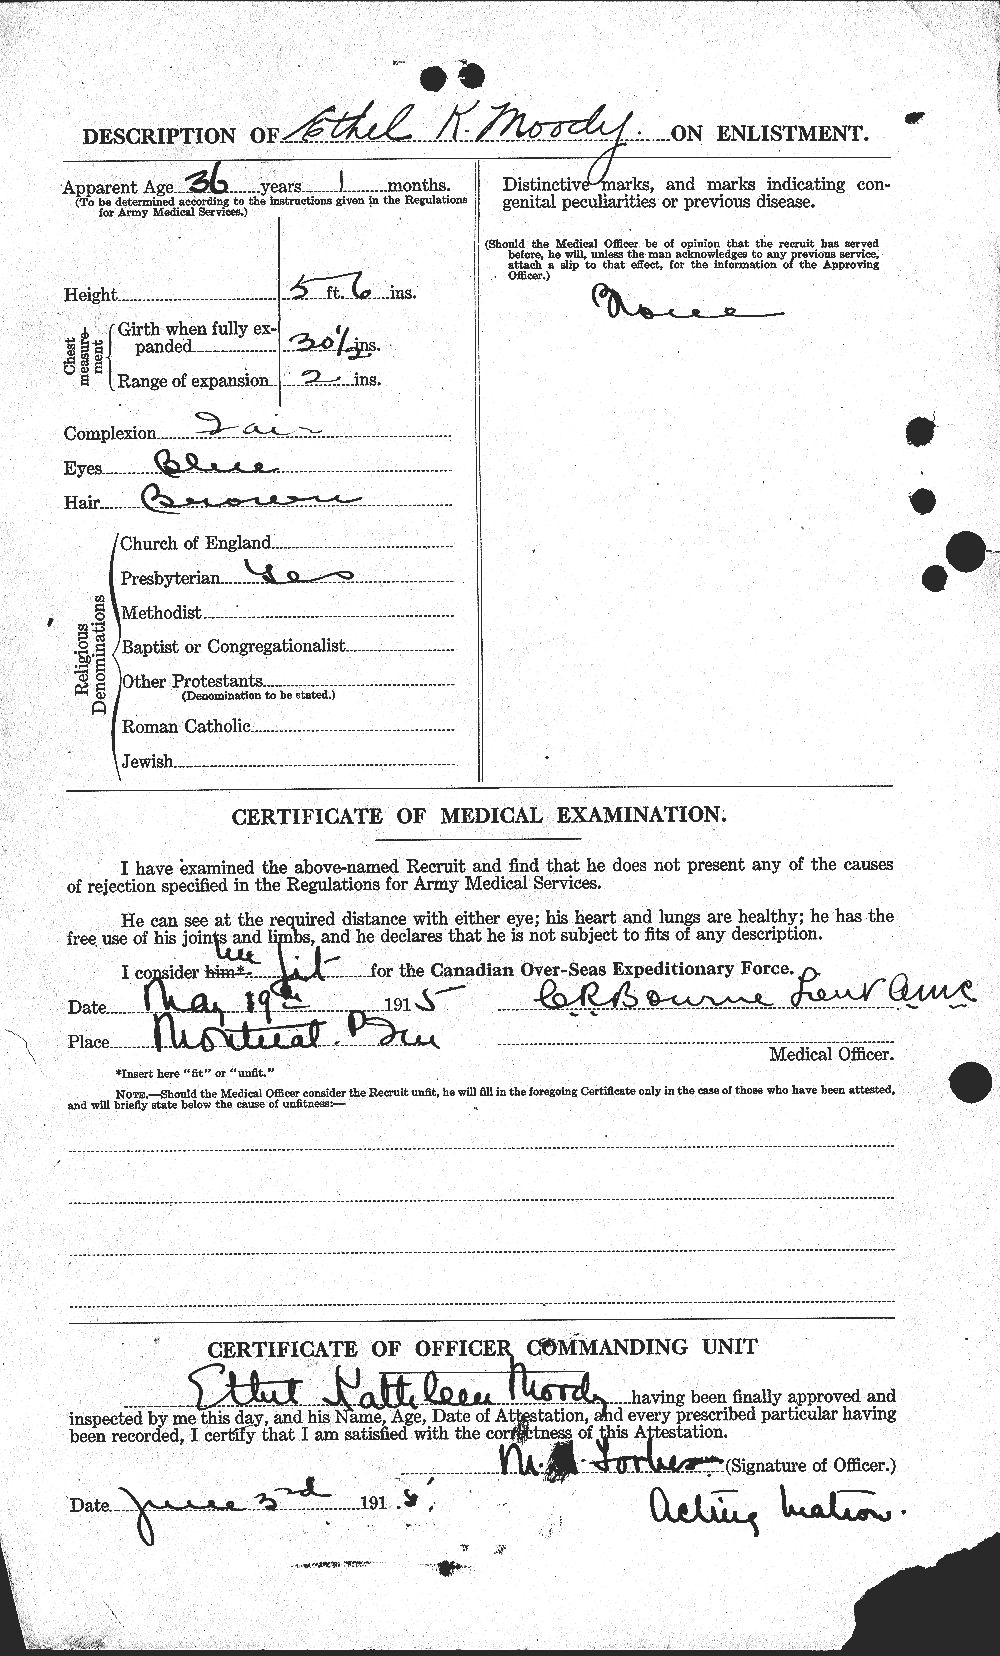 Dossiers du Personnel de la Première Guerre mondiale - CEC 502877b